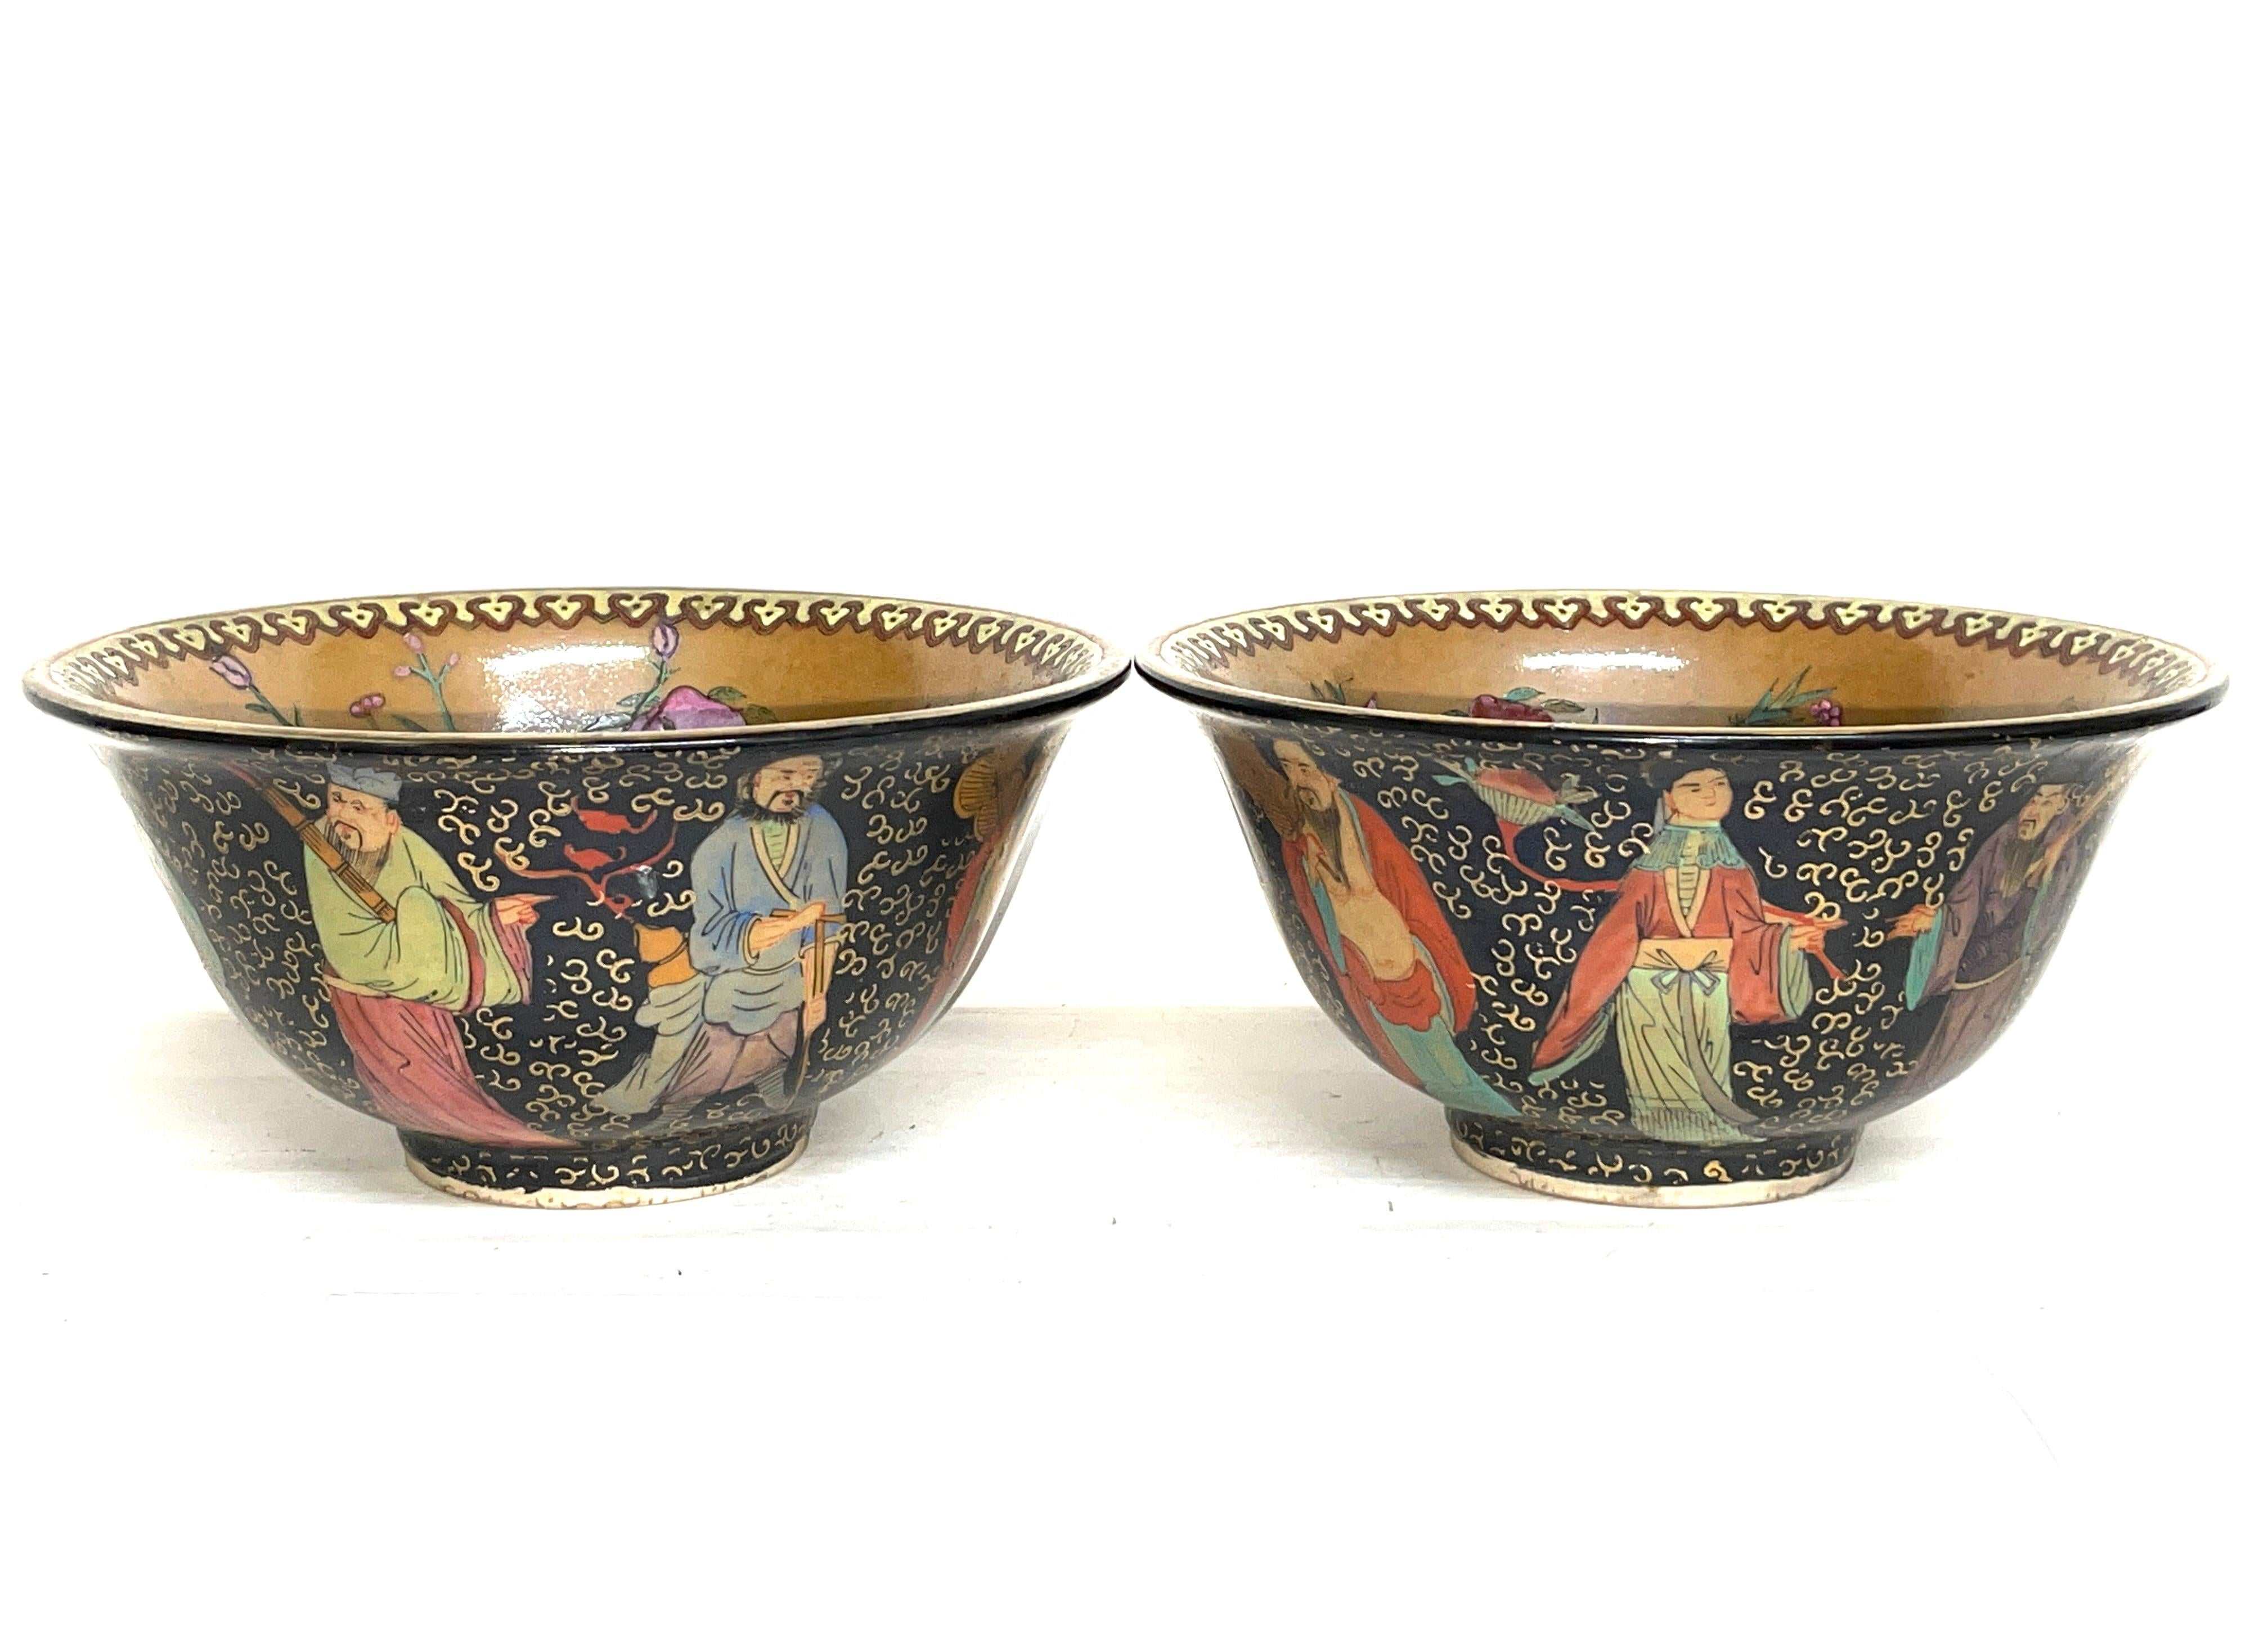 Paire de bols anciens en céramique chinoise. 20ème siècle. L'art asiatique.

Bols en céramique décoratifs et richement peints.